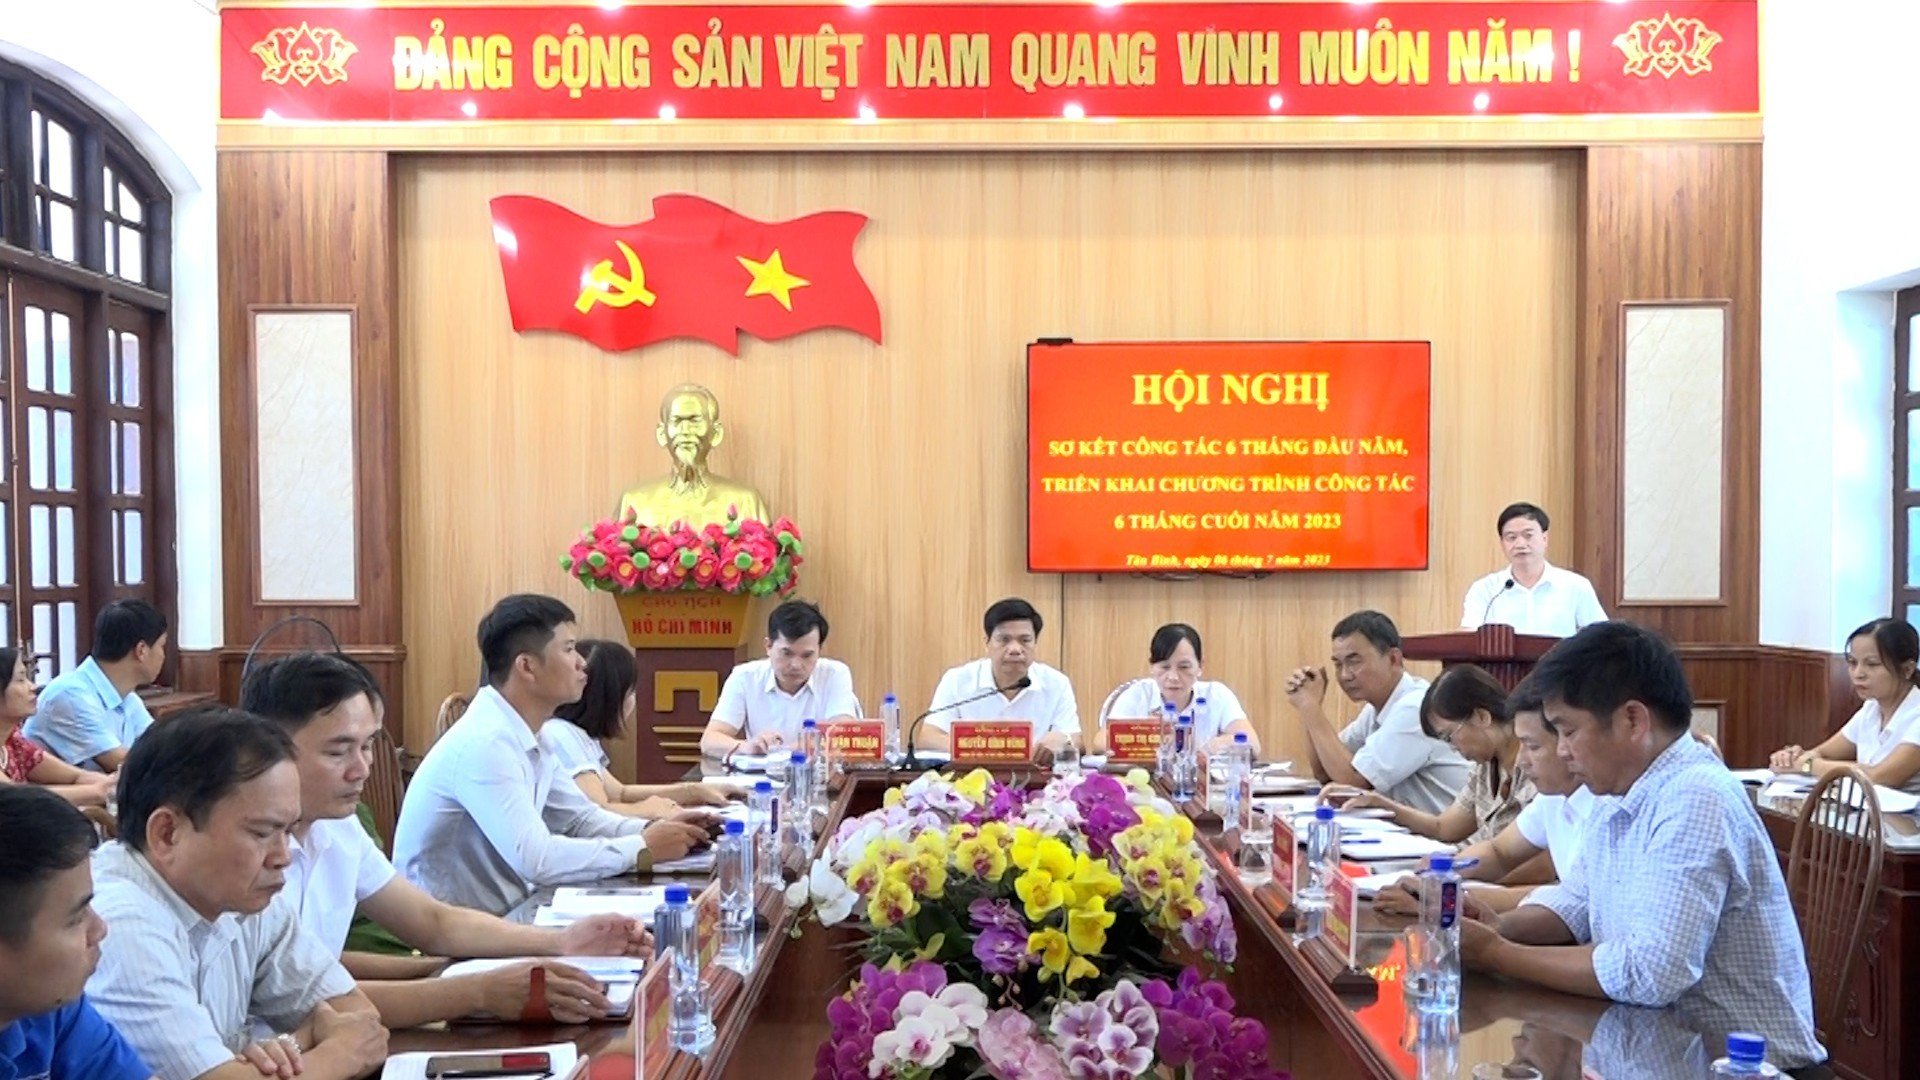 Đảng ủy phường Tân Bình tổ chức Hội nghị sơ kết công tác Đảng 6 tháng đầu năm, triển khai nhiệm vụ 6 tháng cuối năm 2023